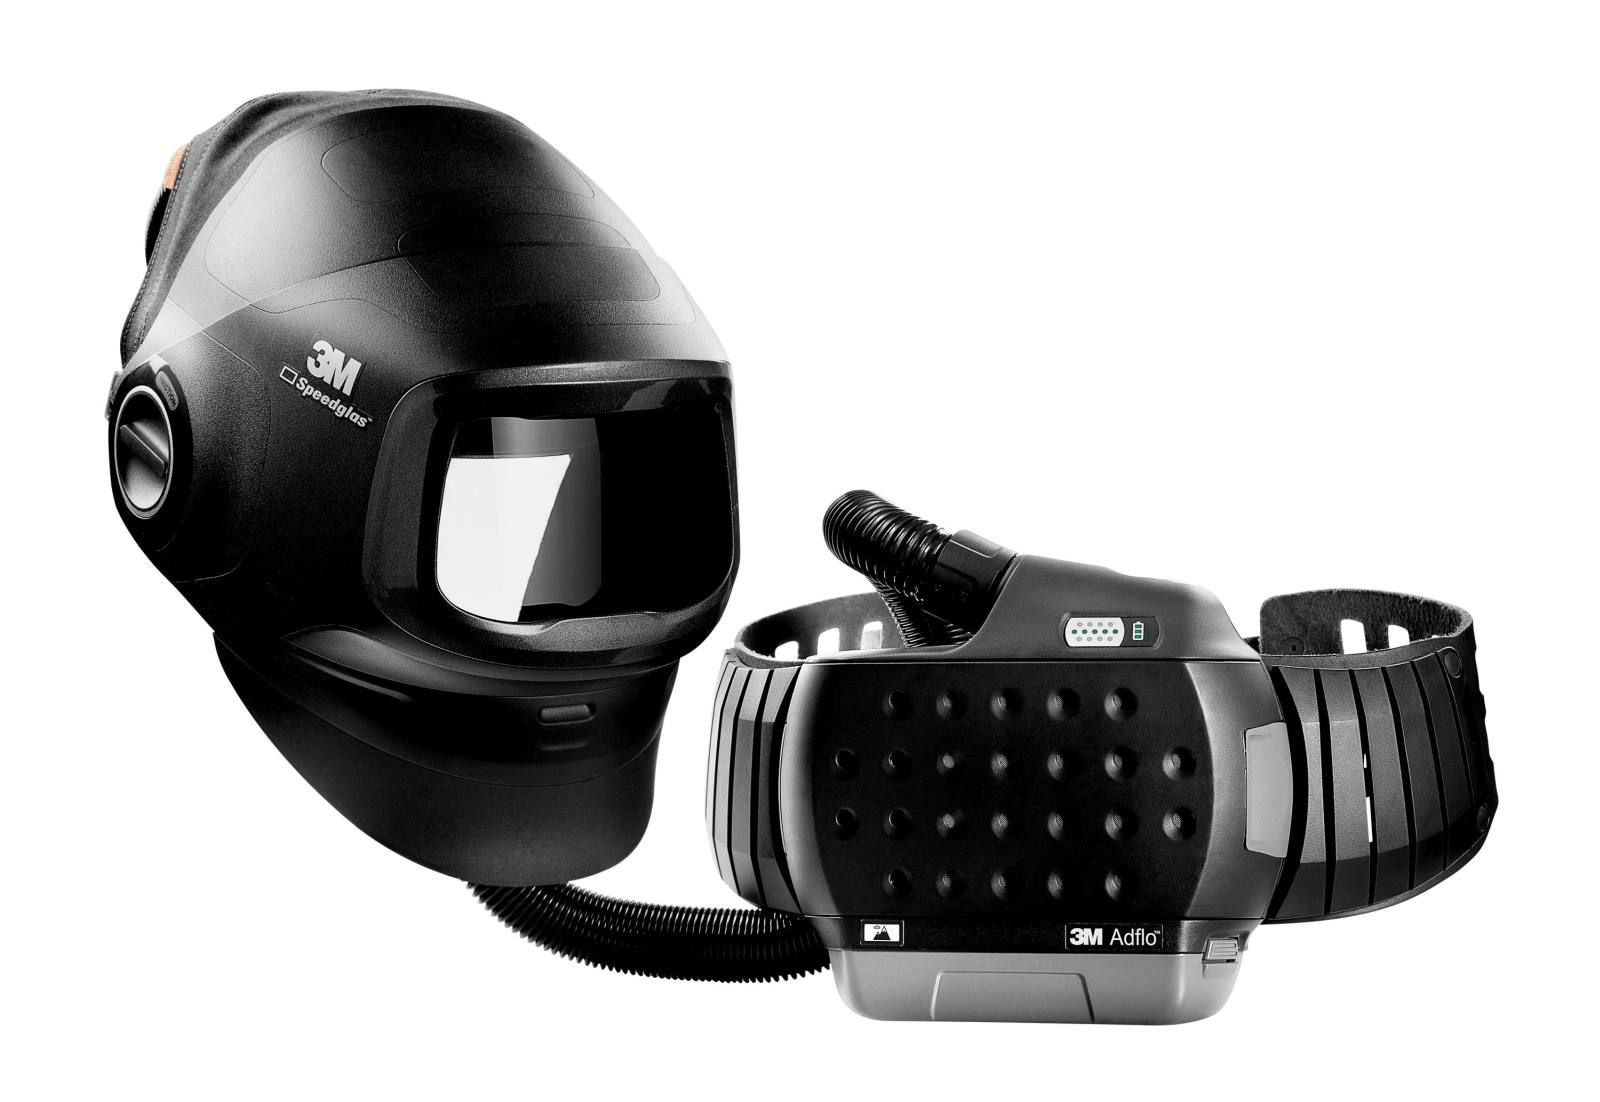 3M Speedglas Hoogwaardig lasmasker G5-01 met 3M Adflo blaasbescherming, hoogwaardige accu, startset verbruiksmaterialen en opbergtas, zonder lasfilter, H61780